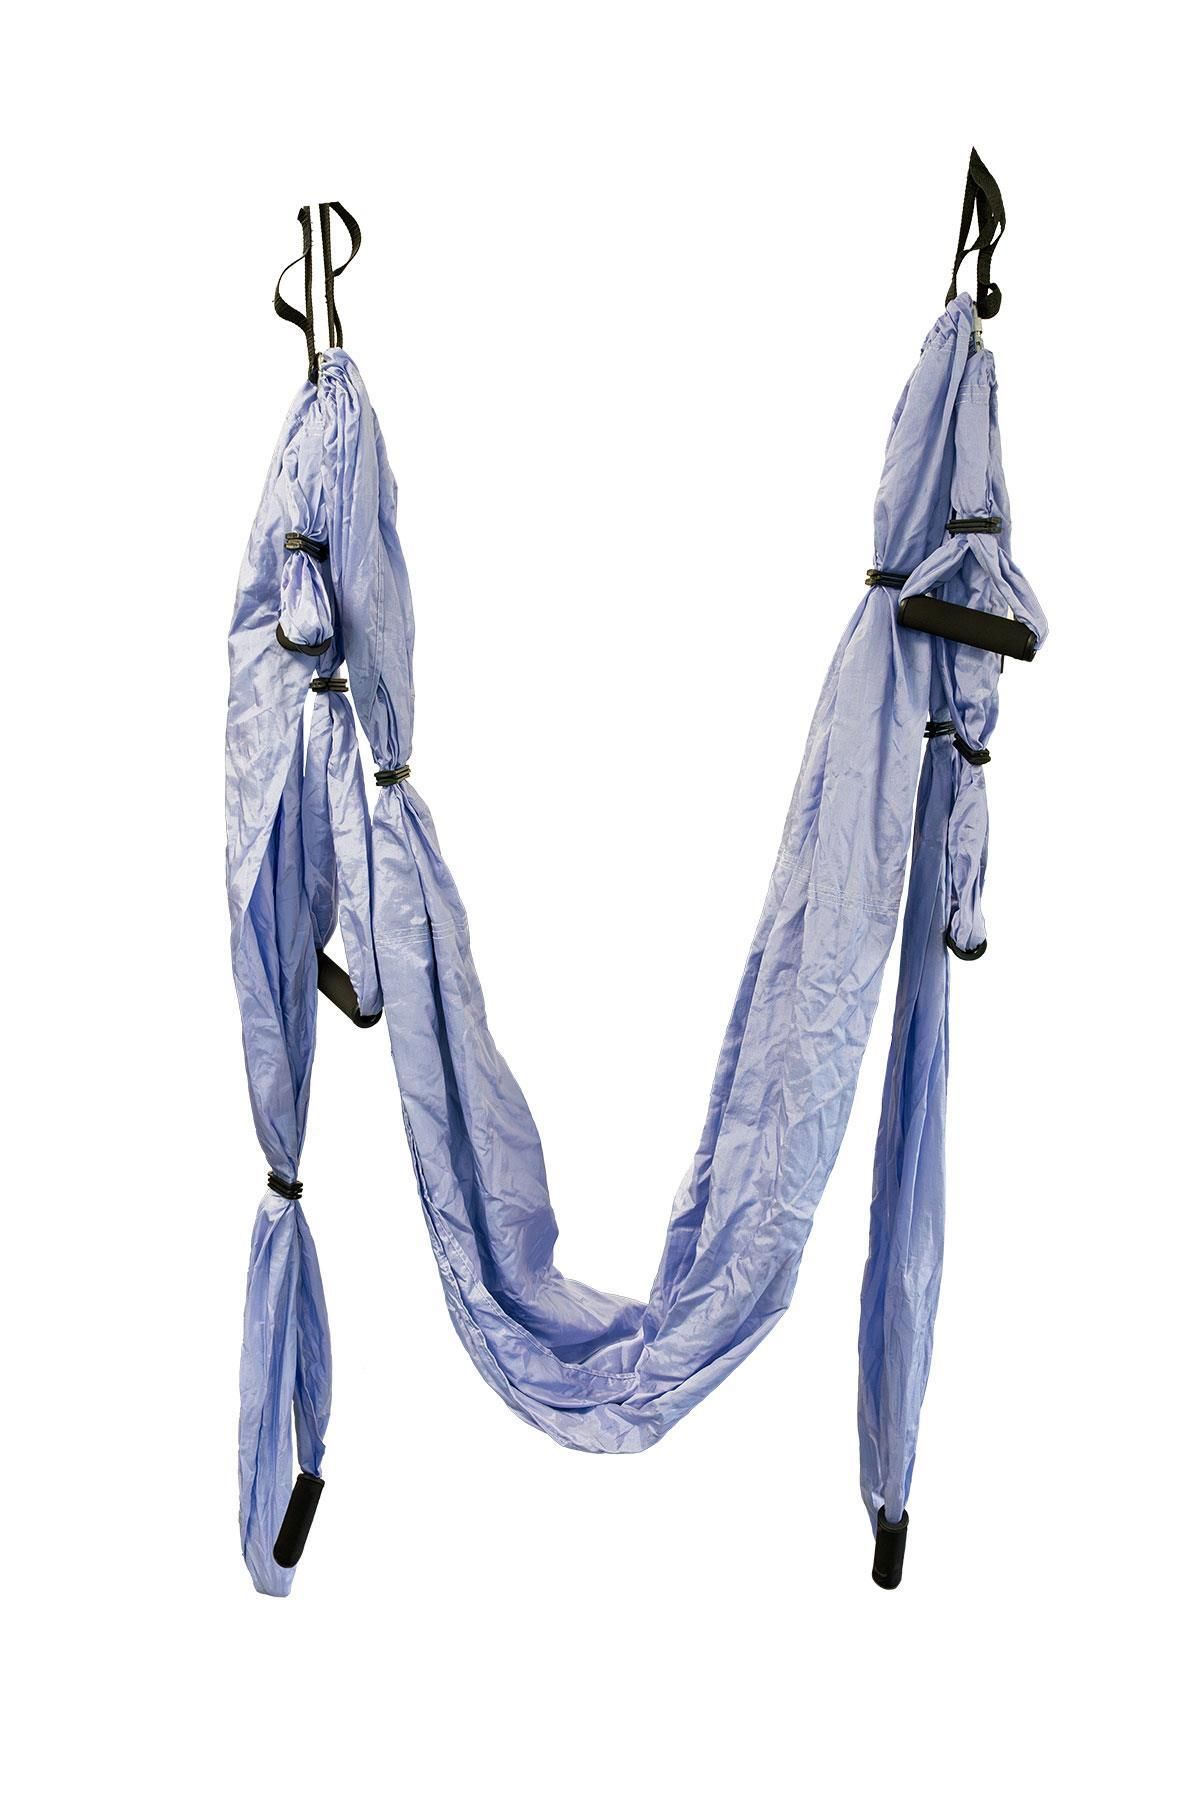 Yogabu Swing Yoga Hamağı ve Montaj Aparatı (Mavi)